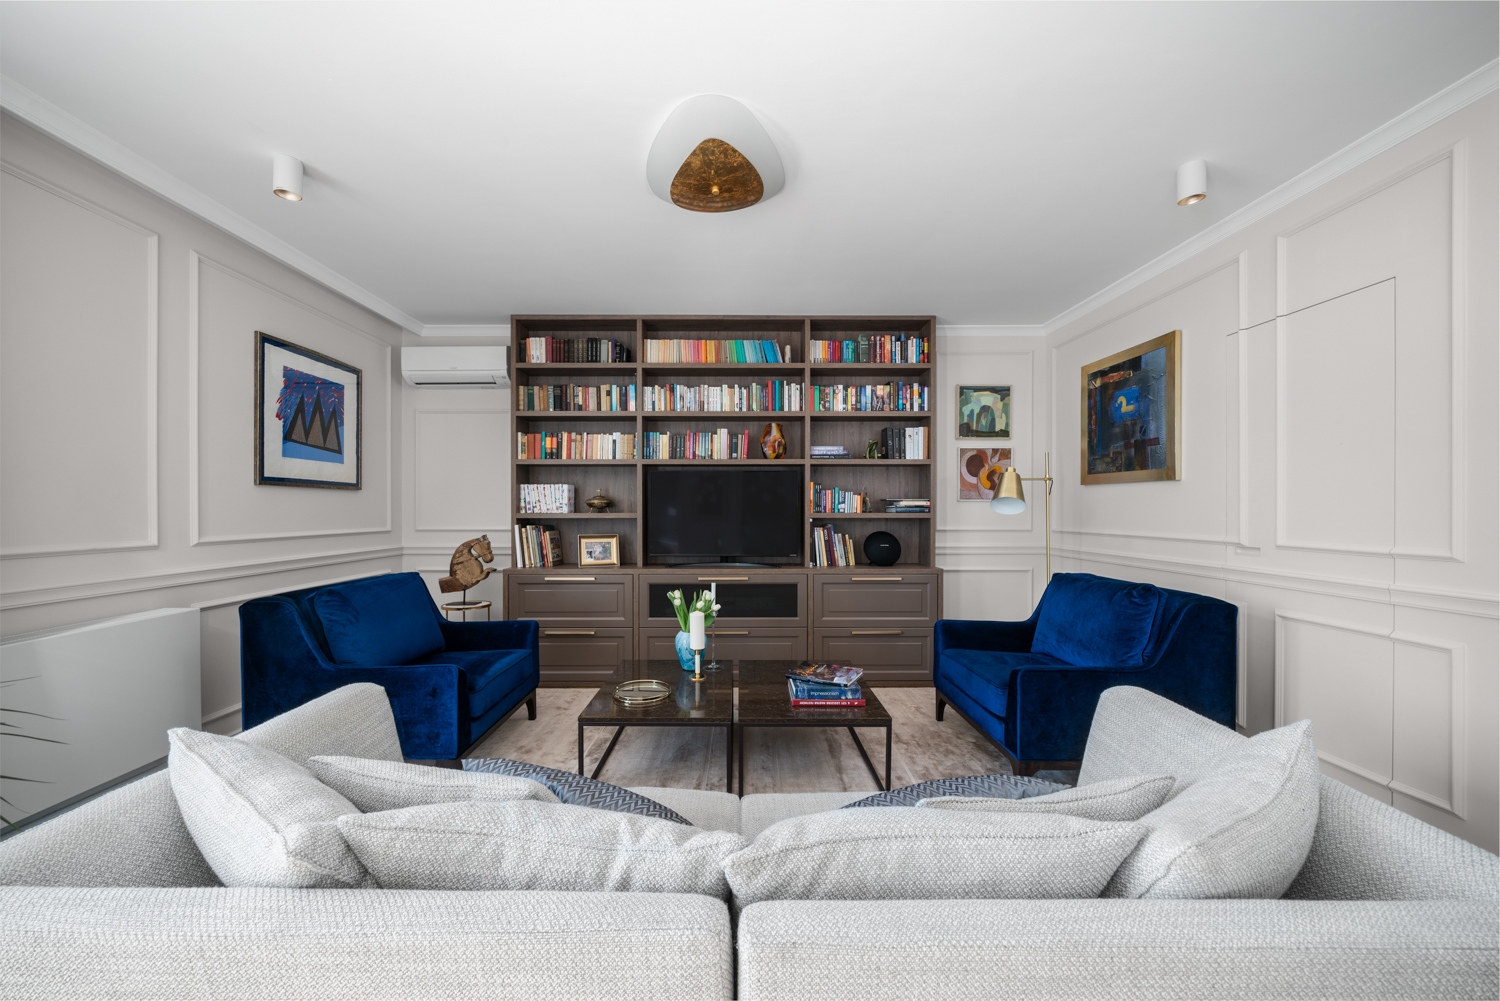 A szalonszerű nappali az időtlen klasszikus stílust képviseli elegáns bútoraival, egyedi, beépített könyvespolcával és kazettás falburkolatával, amelyben a rejtett ajtó egy praktikus tárolóba vezet.